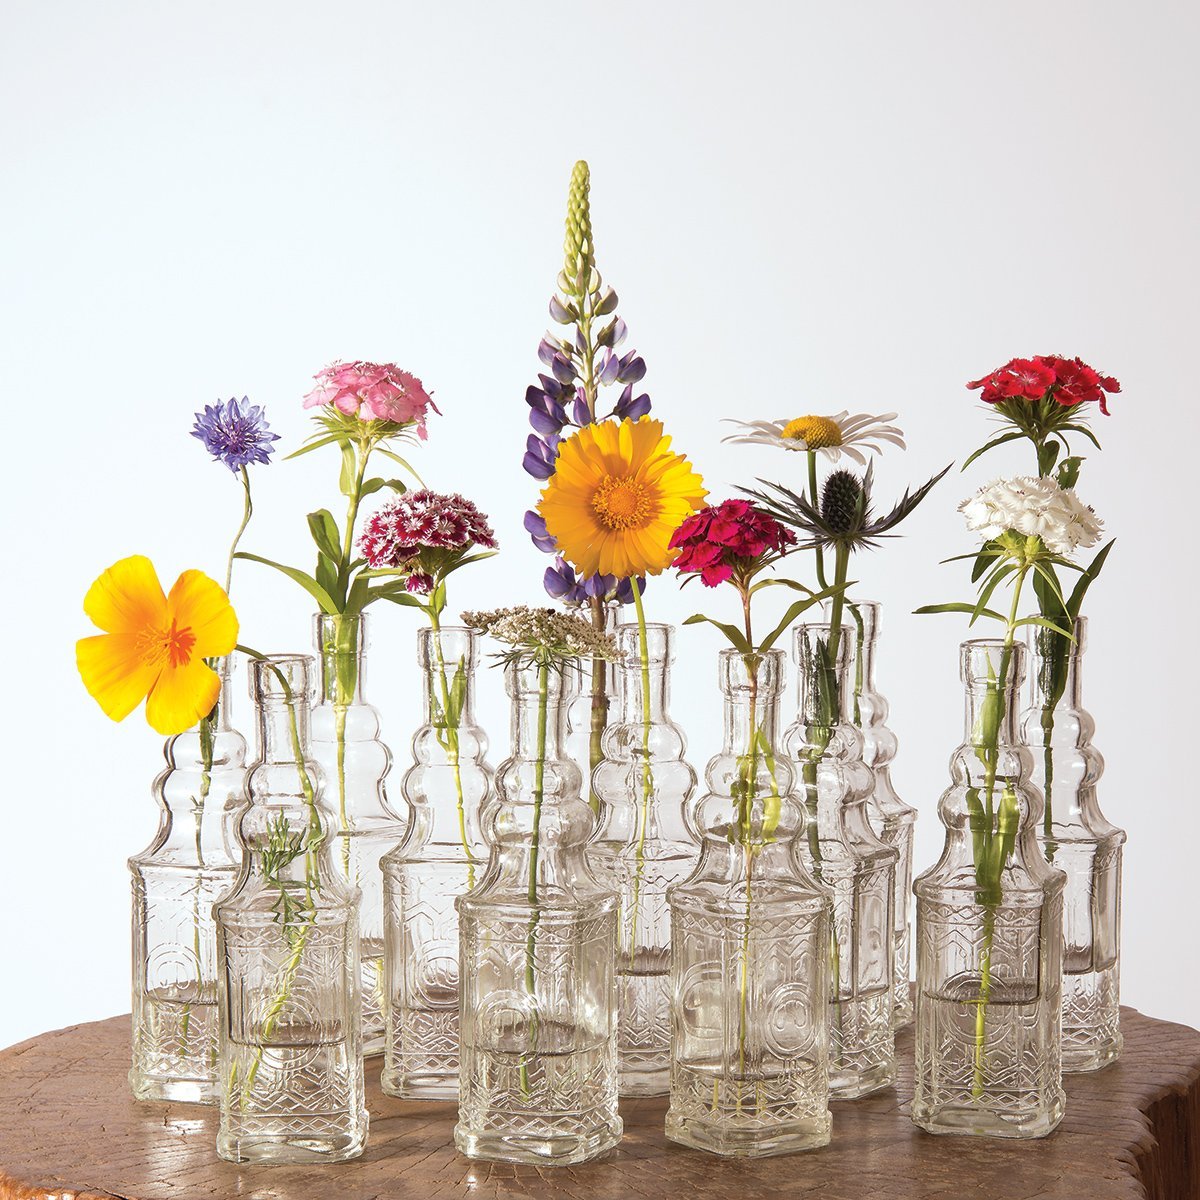 6.5" Ella Clear Vintage Glass Bottle with Cork - DIY Wedding Flower Bud Vases - PaperLanternStore.com - Paper Lanterns, Decor, Party Lights & More